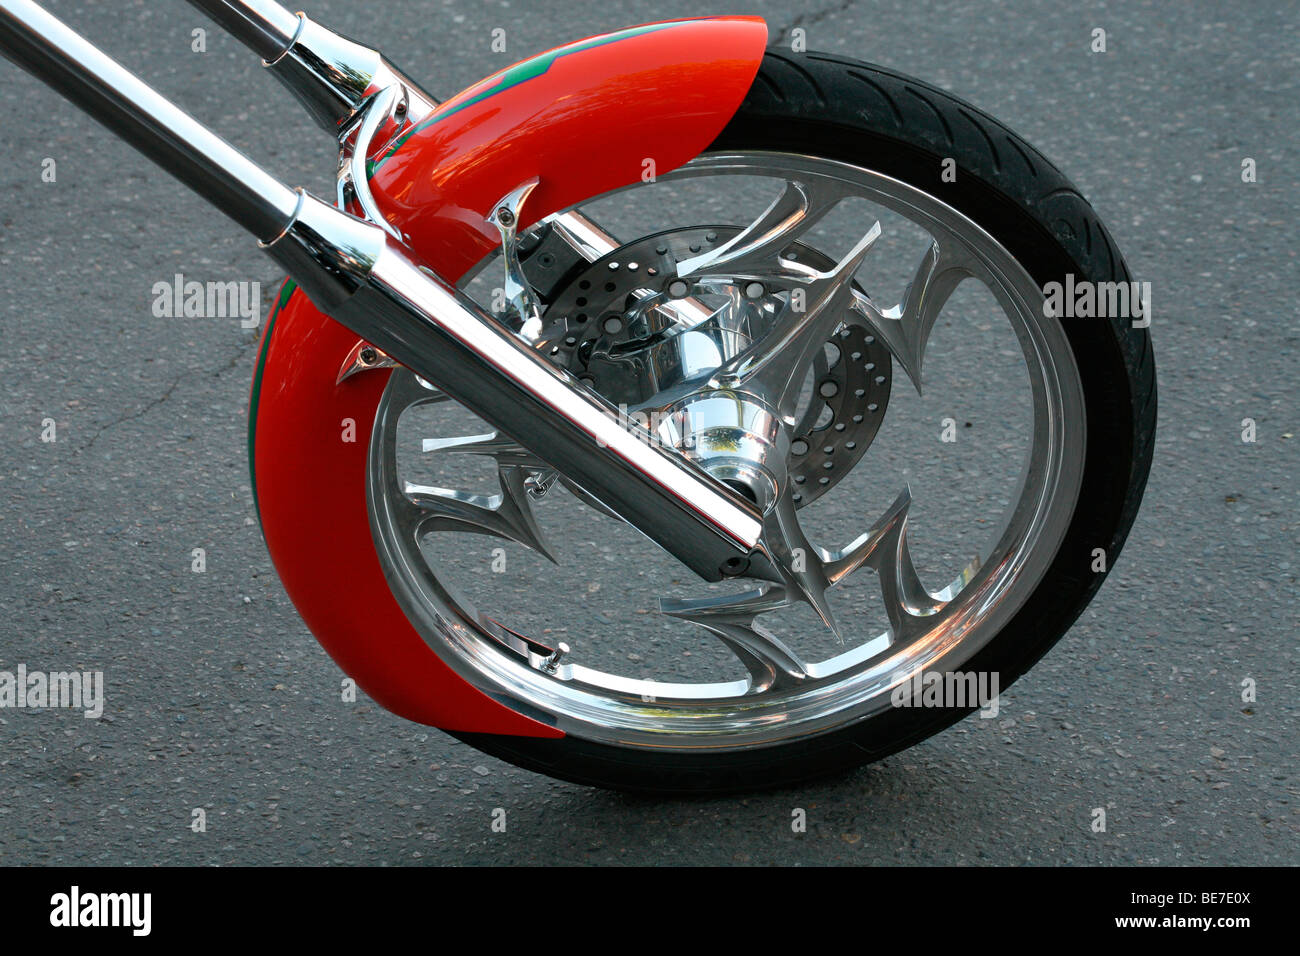 Motociclo, dettaglio Foto Stock